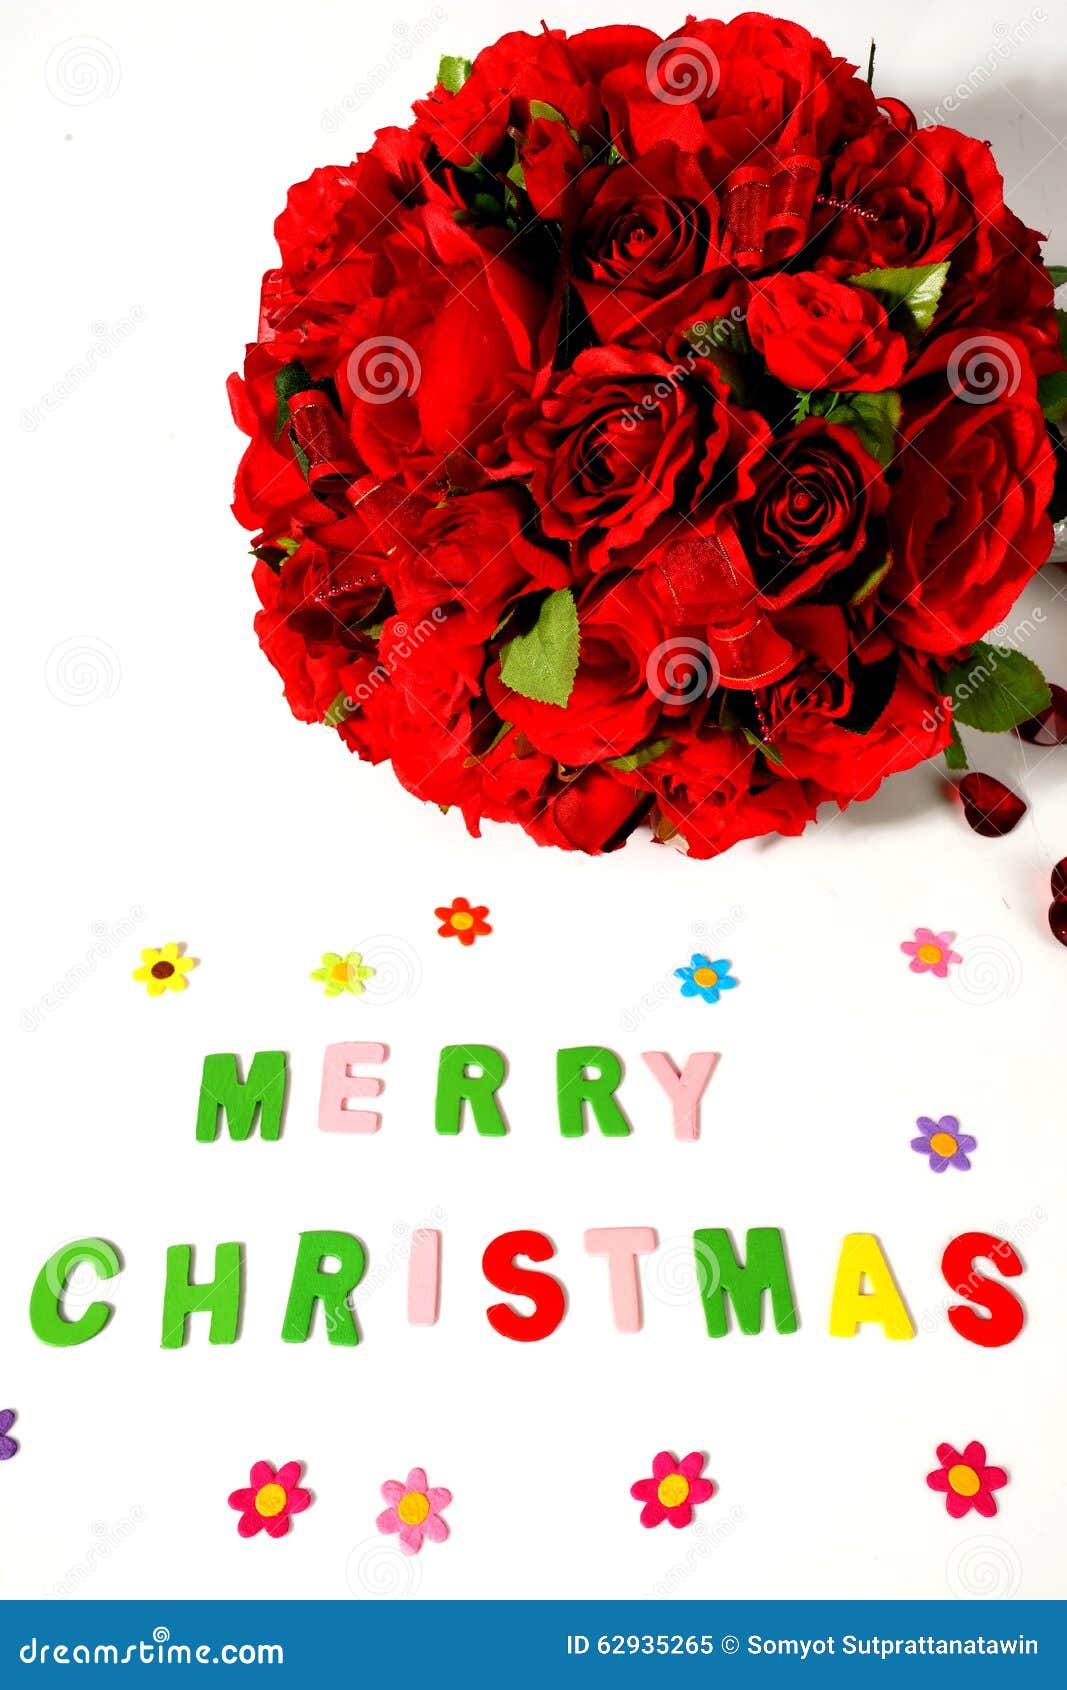 Buon Natale Rosa.Buon Natale E Rosa Rossa In Vaso Immagine Stock Immagine Di Bianco Background 62935265